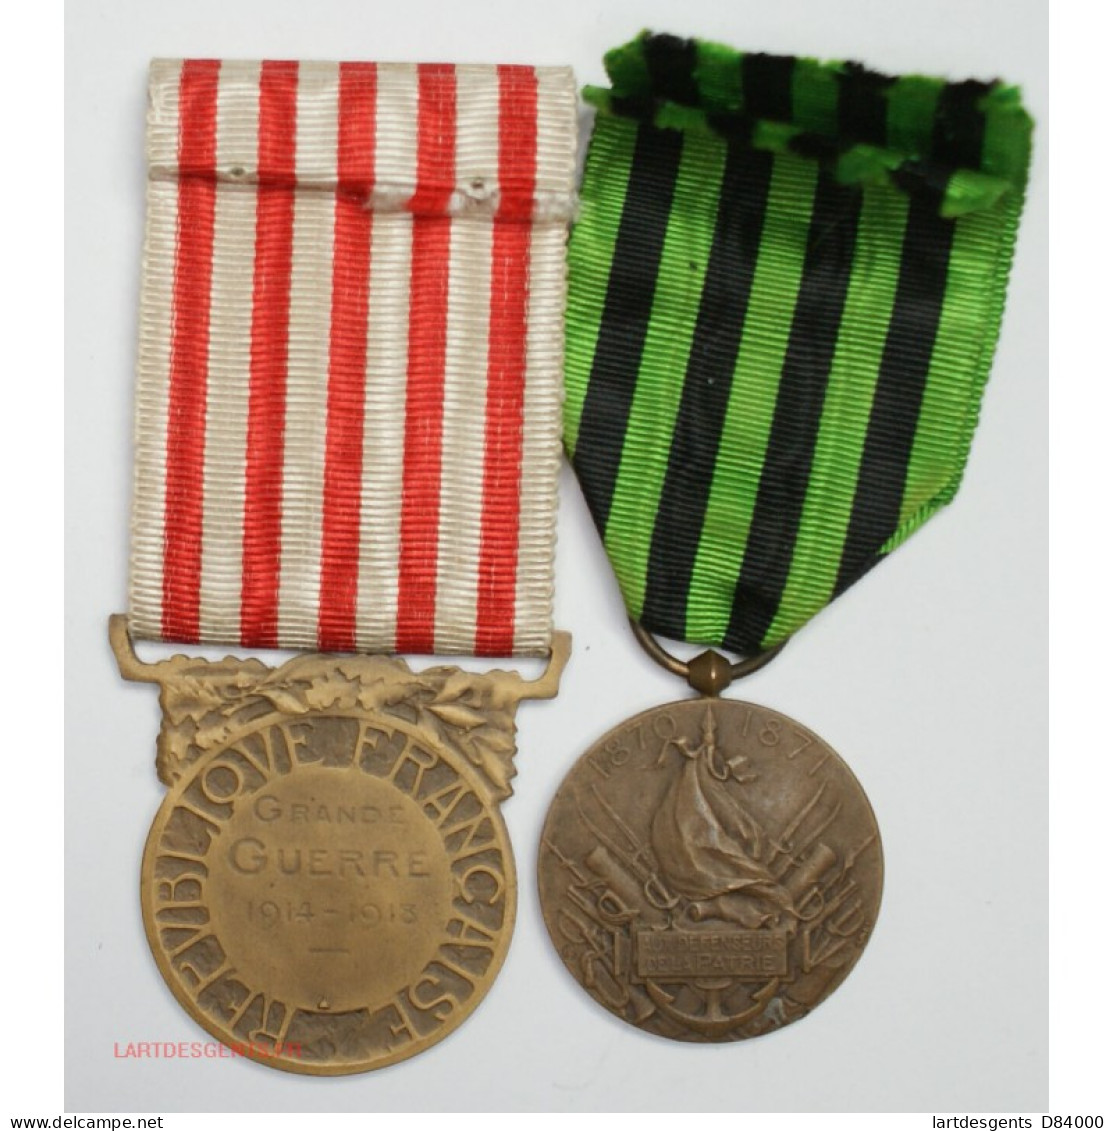 MEDAILLE De La GRANDE GUERRE 1914 - 1918 WW1 + Défenseurs De La Patrie 1870-71 - Royaux / De Noblesse